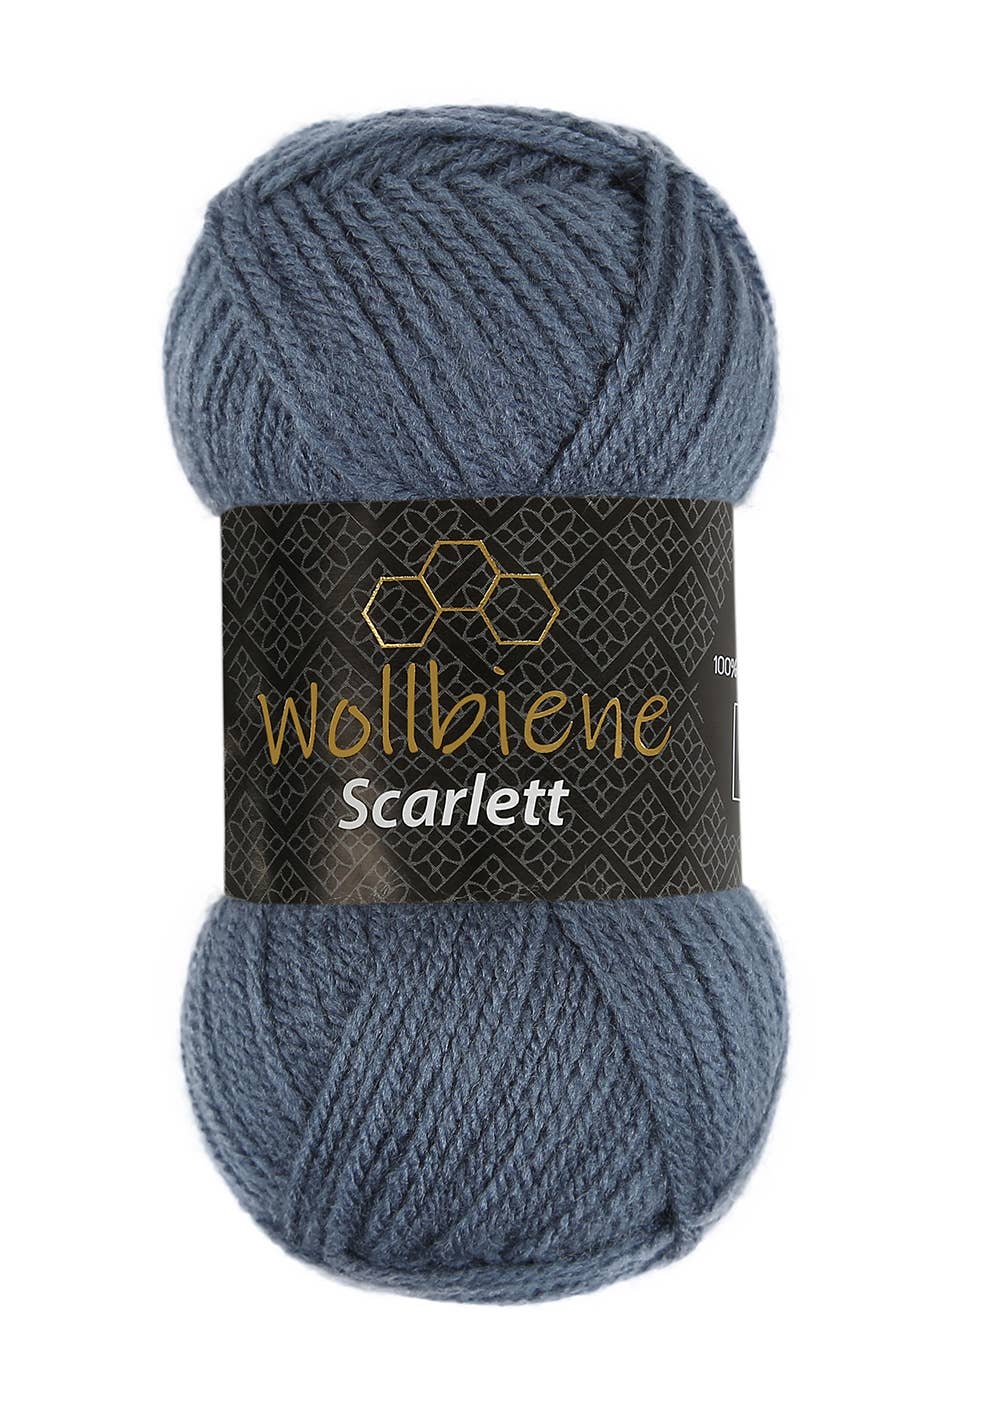 Wollbiene - Wollbiene Scarlett Strickwolle Häkeln Stricken Uni Farbe